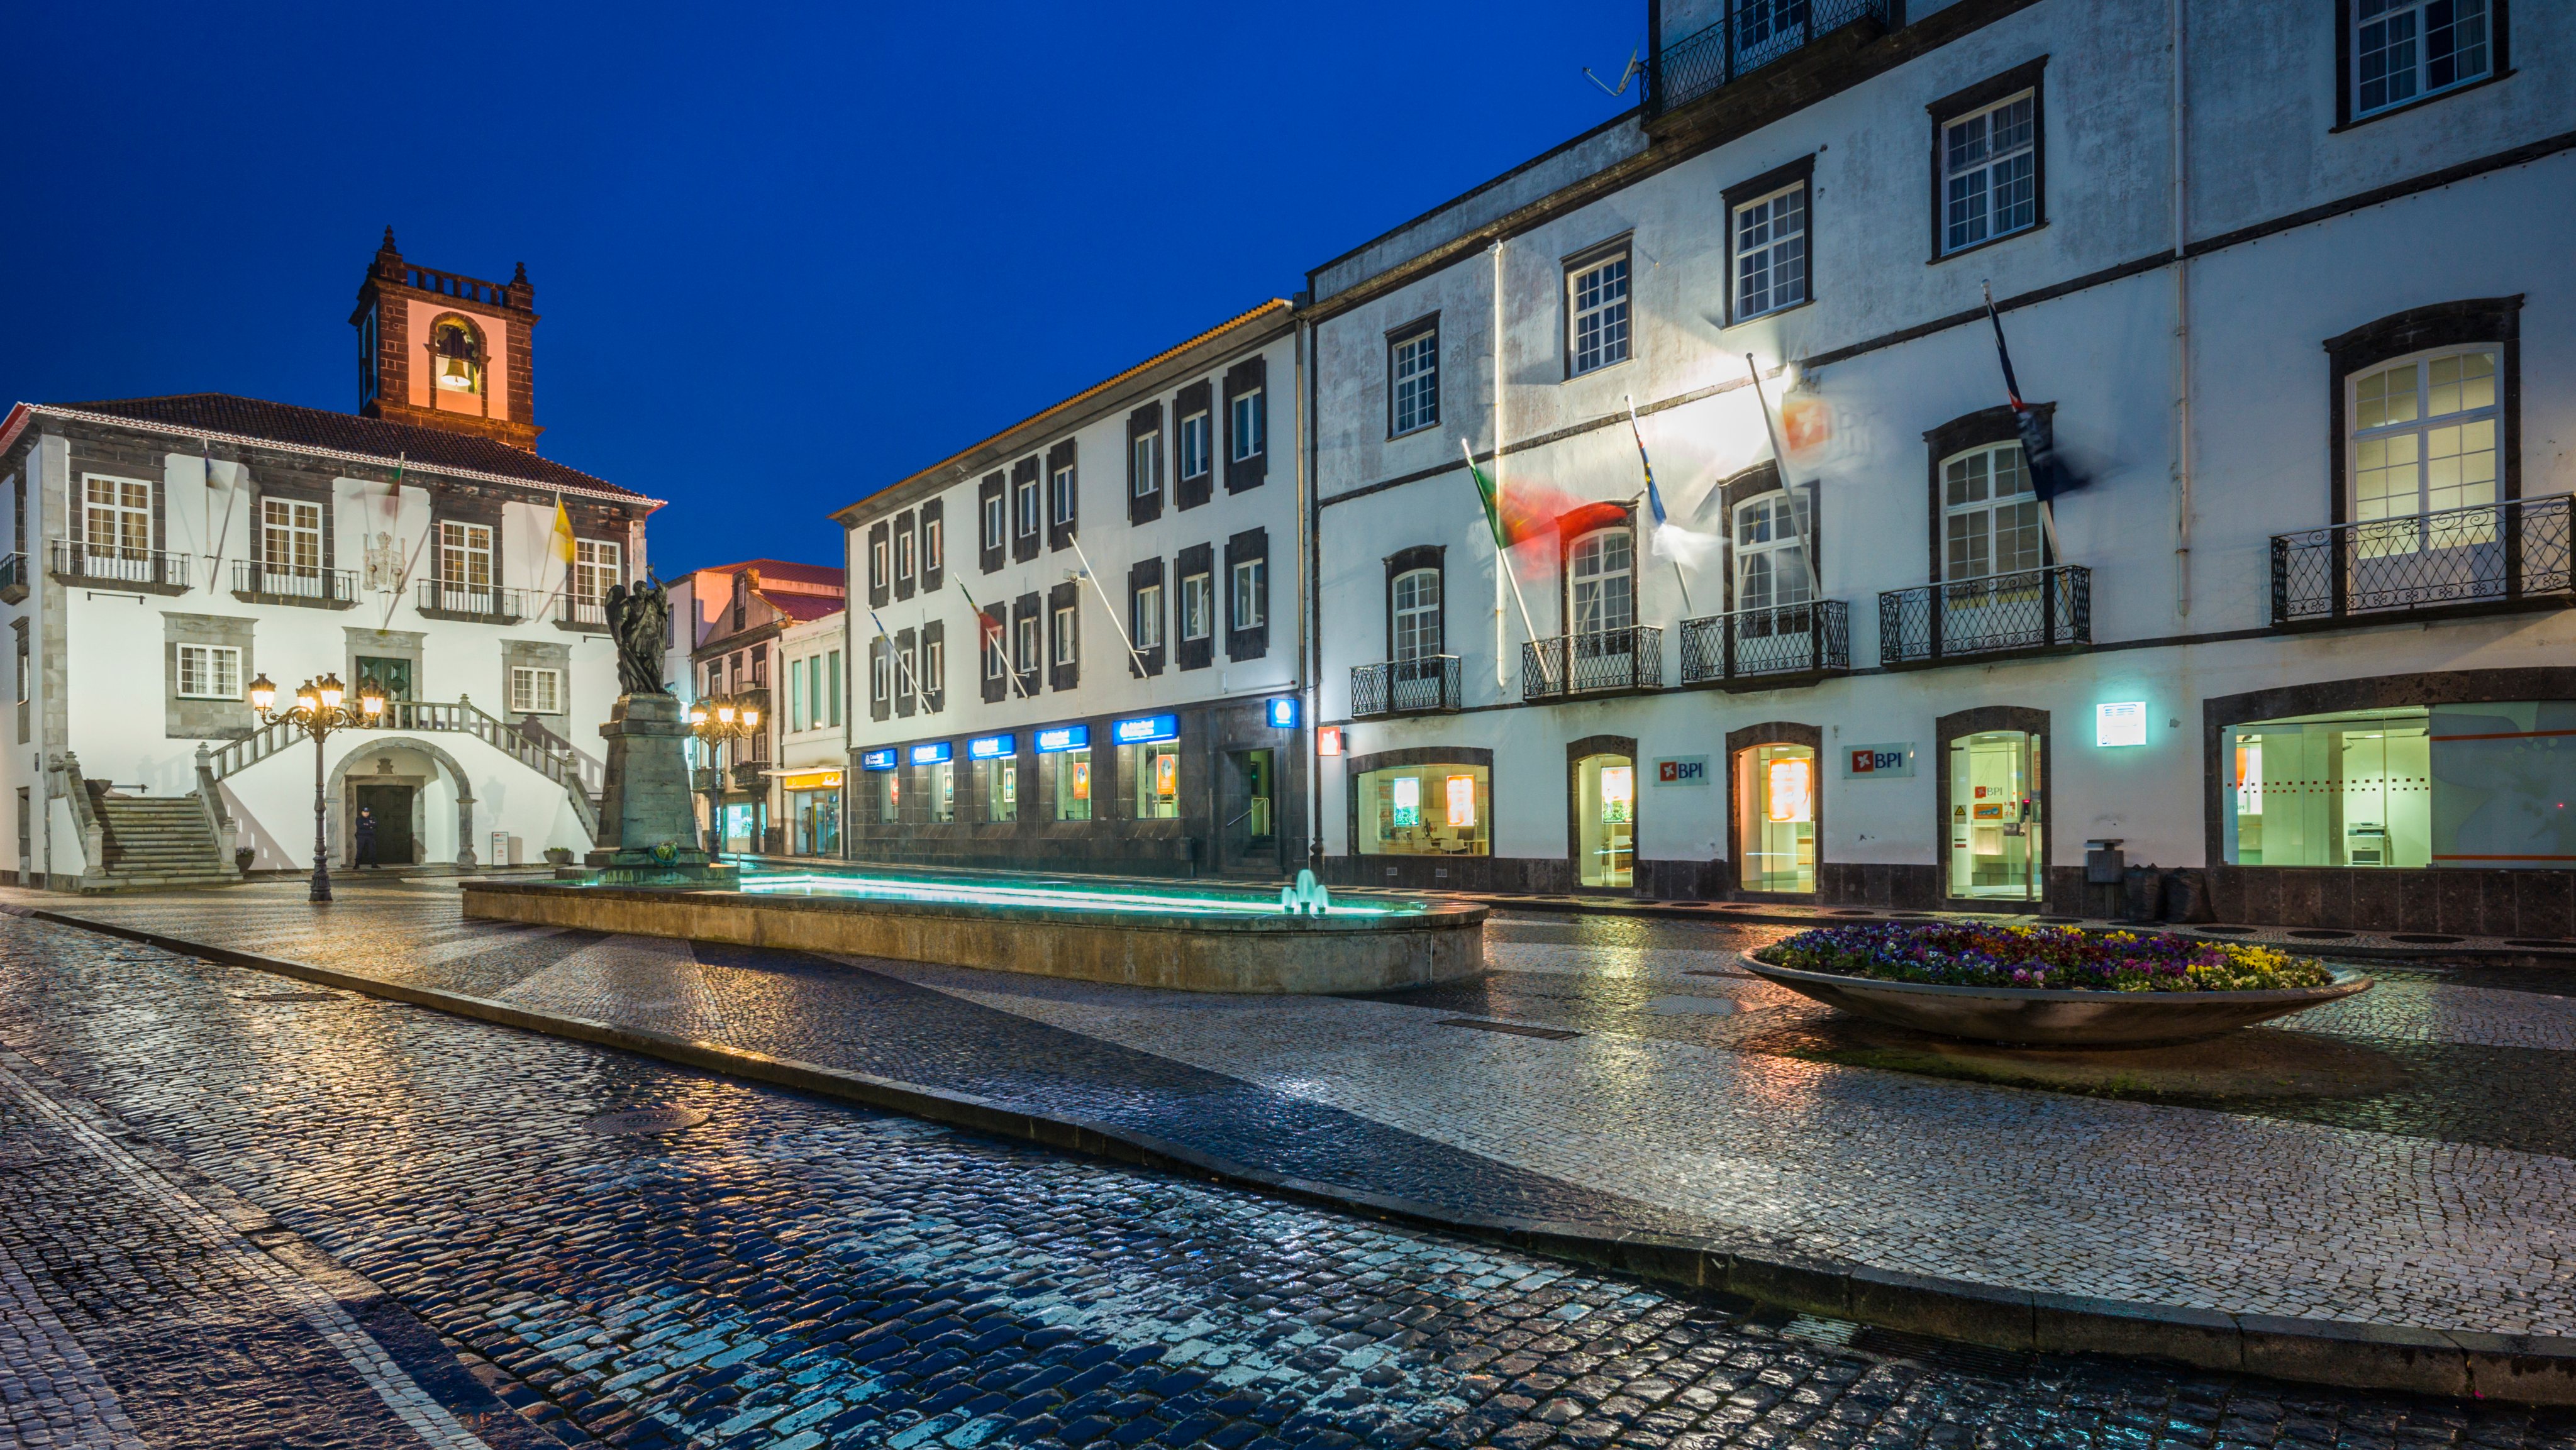 Azores, Sao Miguel Island, Ponta Delgada, town hall